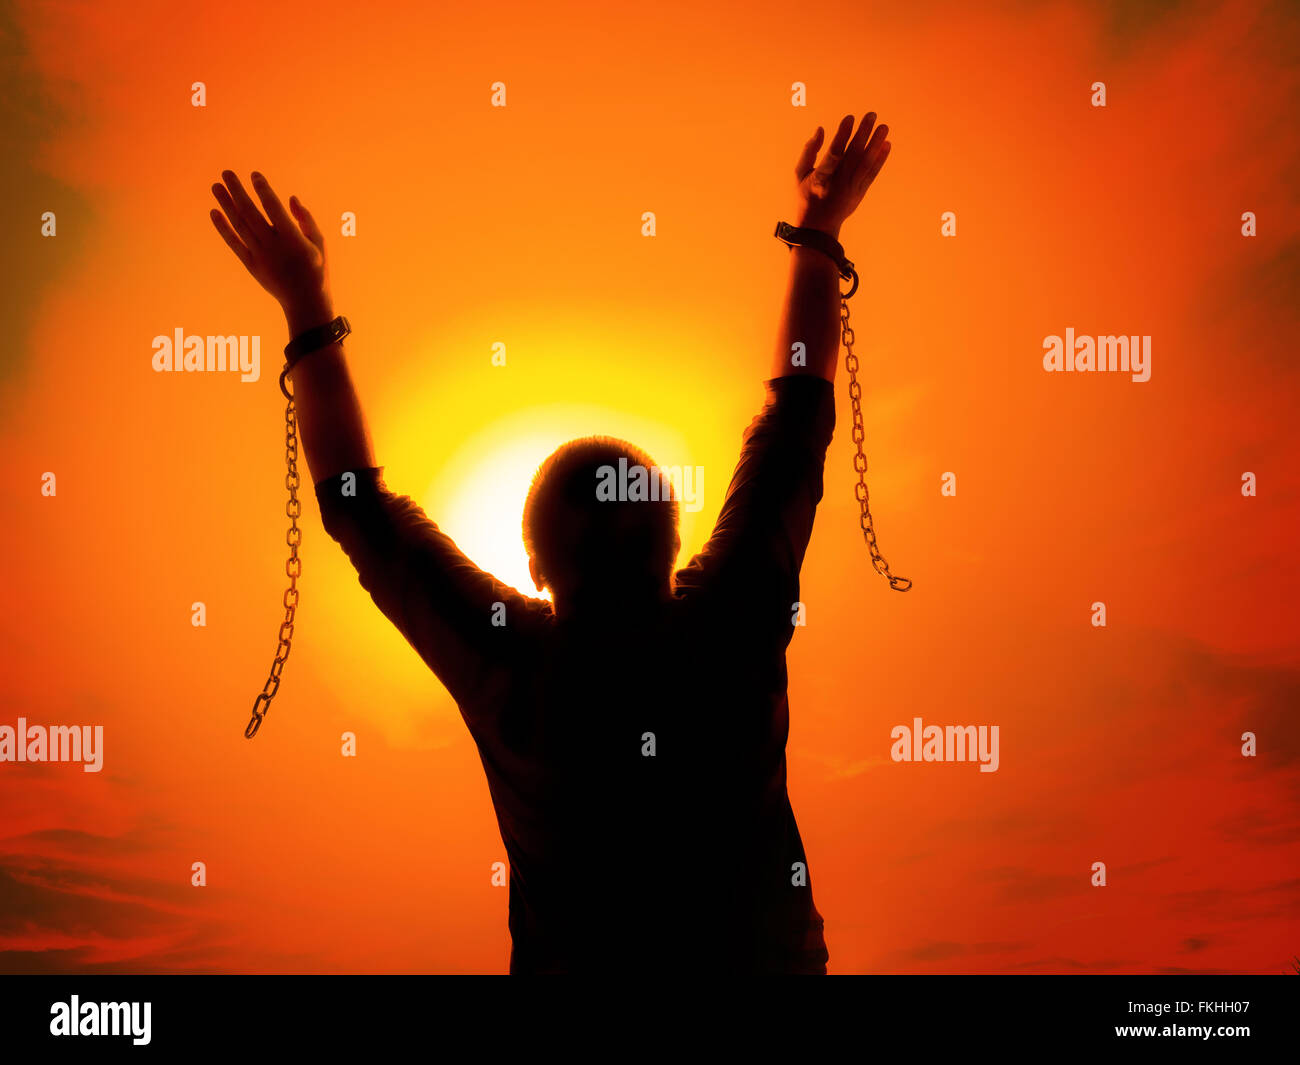 Silhouette des Menschen gegen den Sonnenuntergang Himmel hob seine Hände wie wird er frei von Ketten und Fesseln Stockfoto